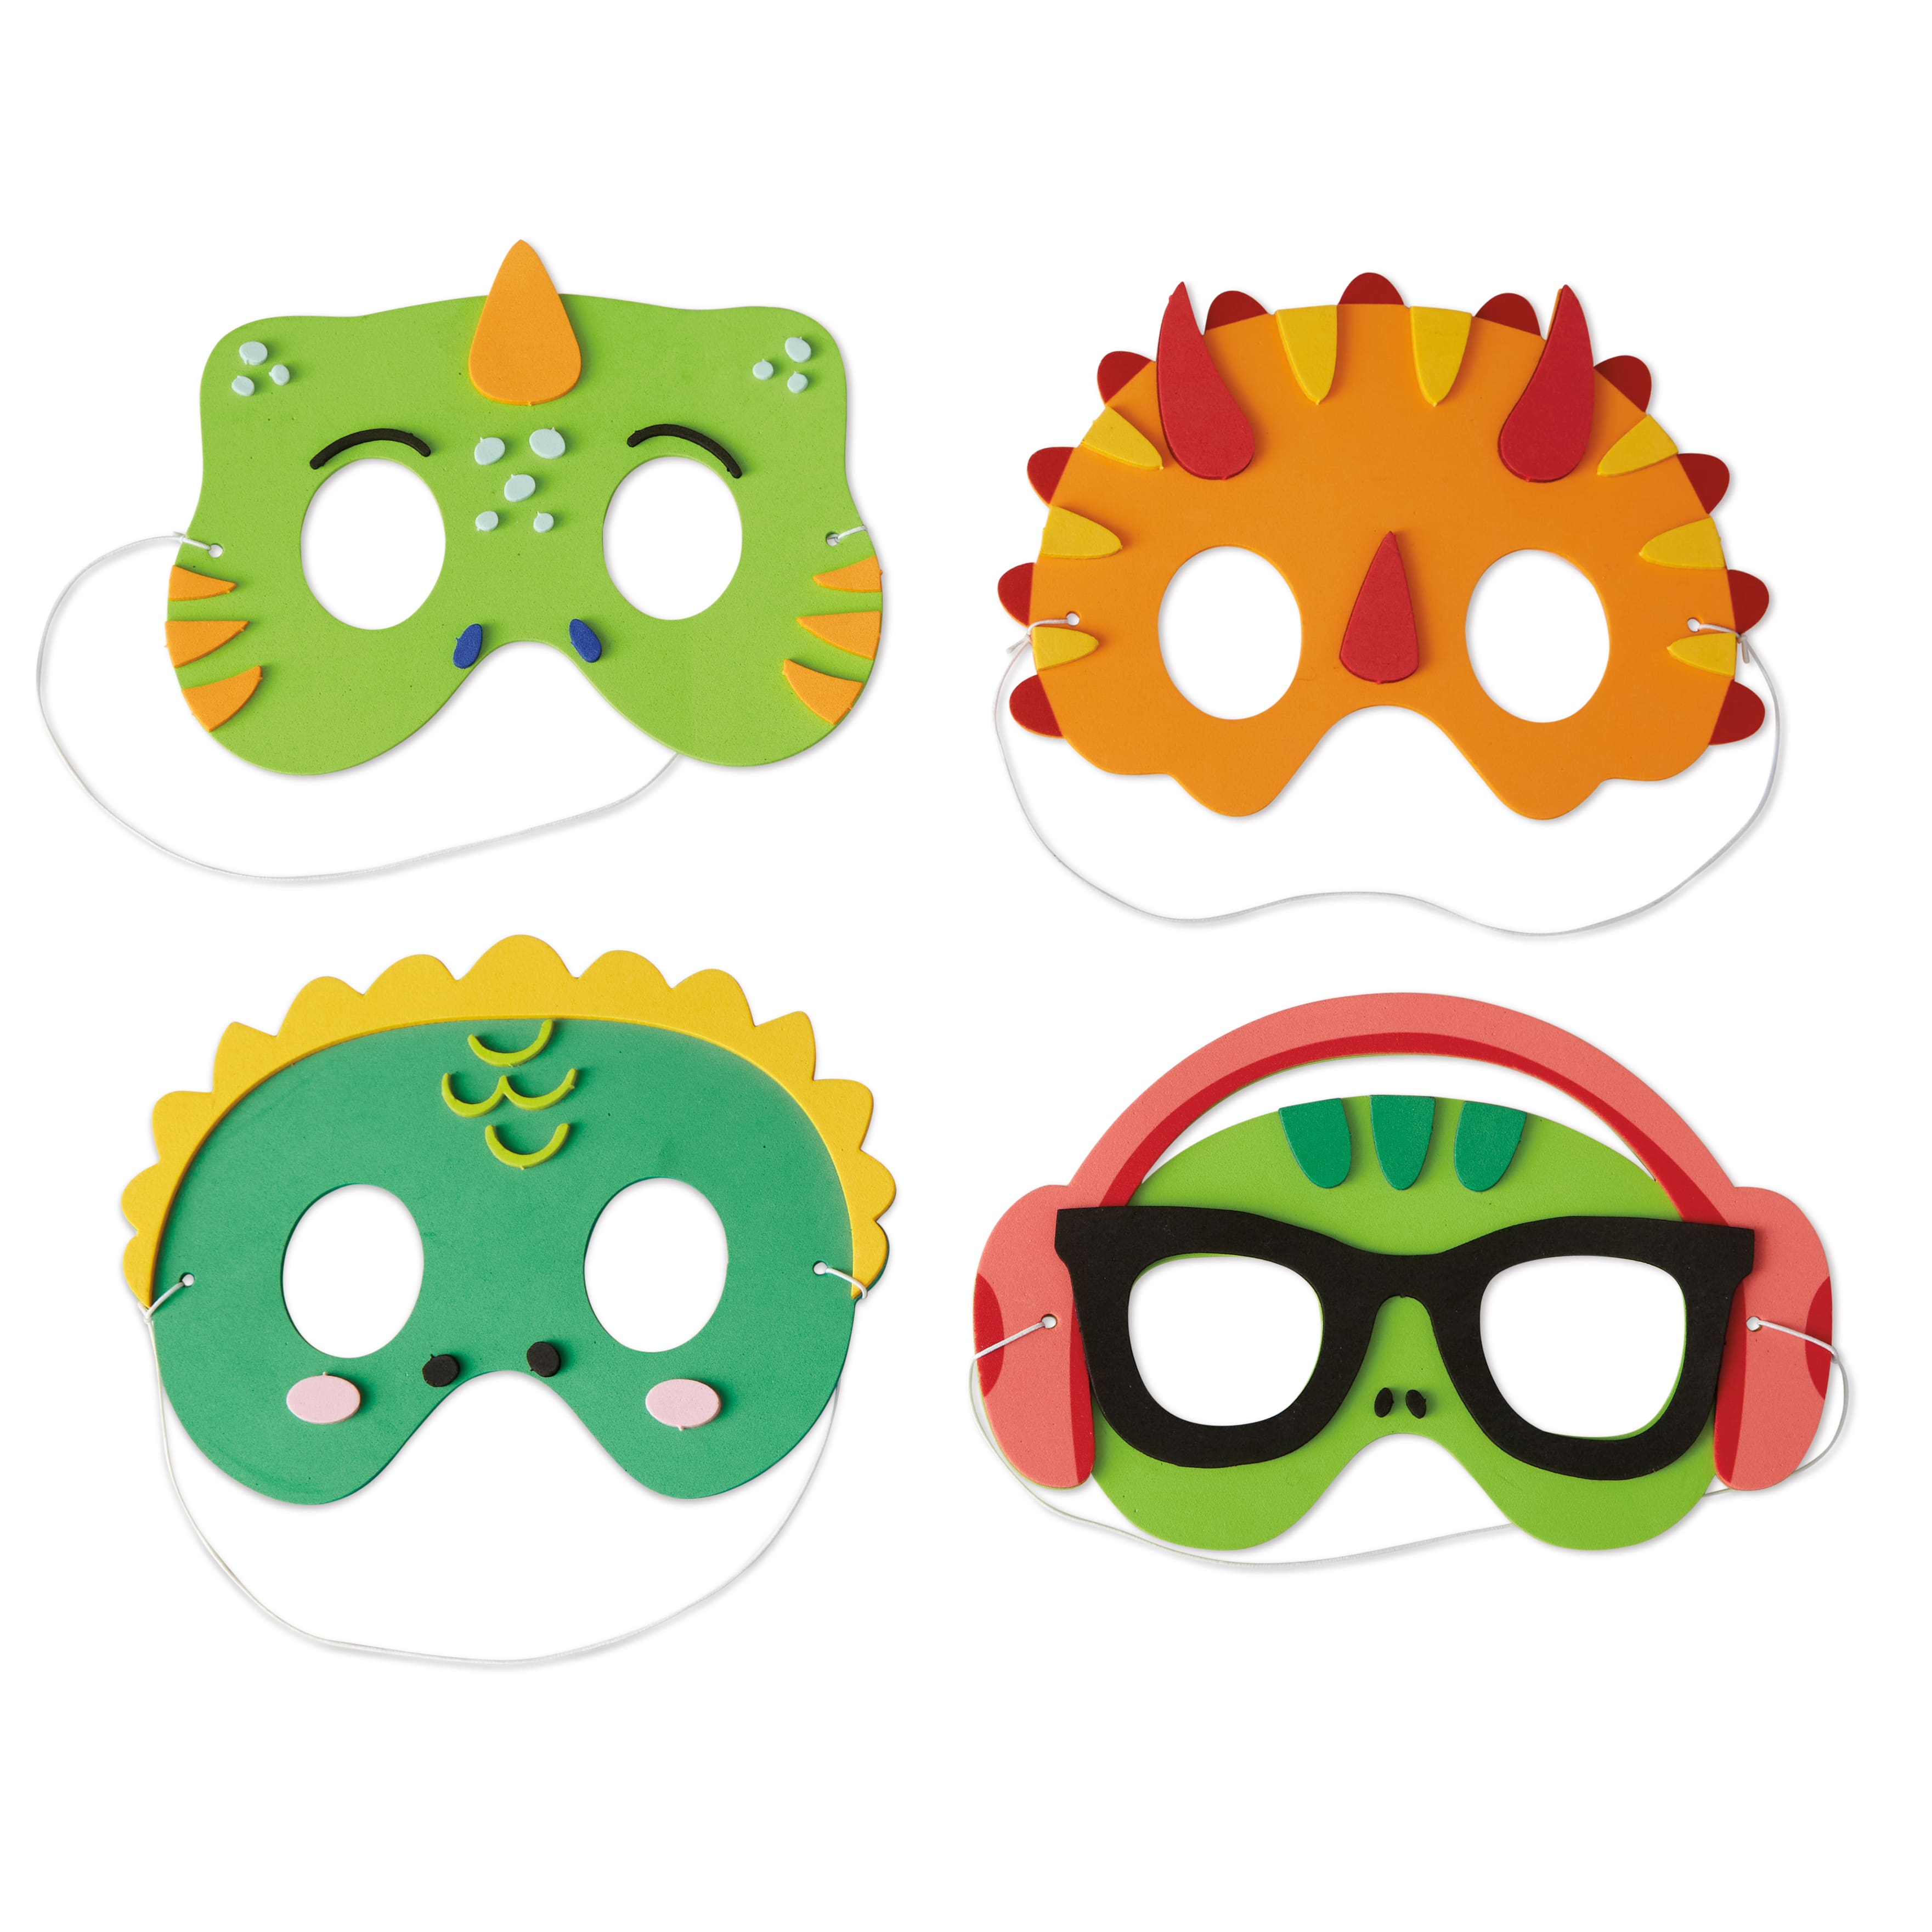 Kids' Masks and Character Masks